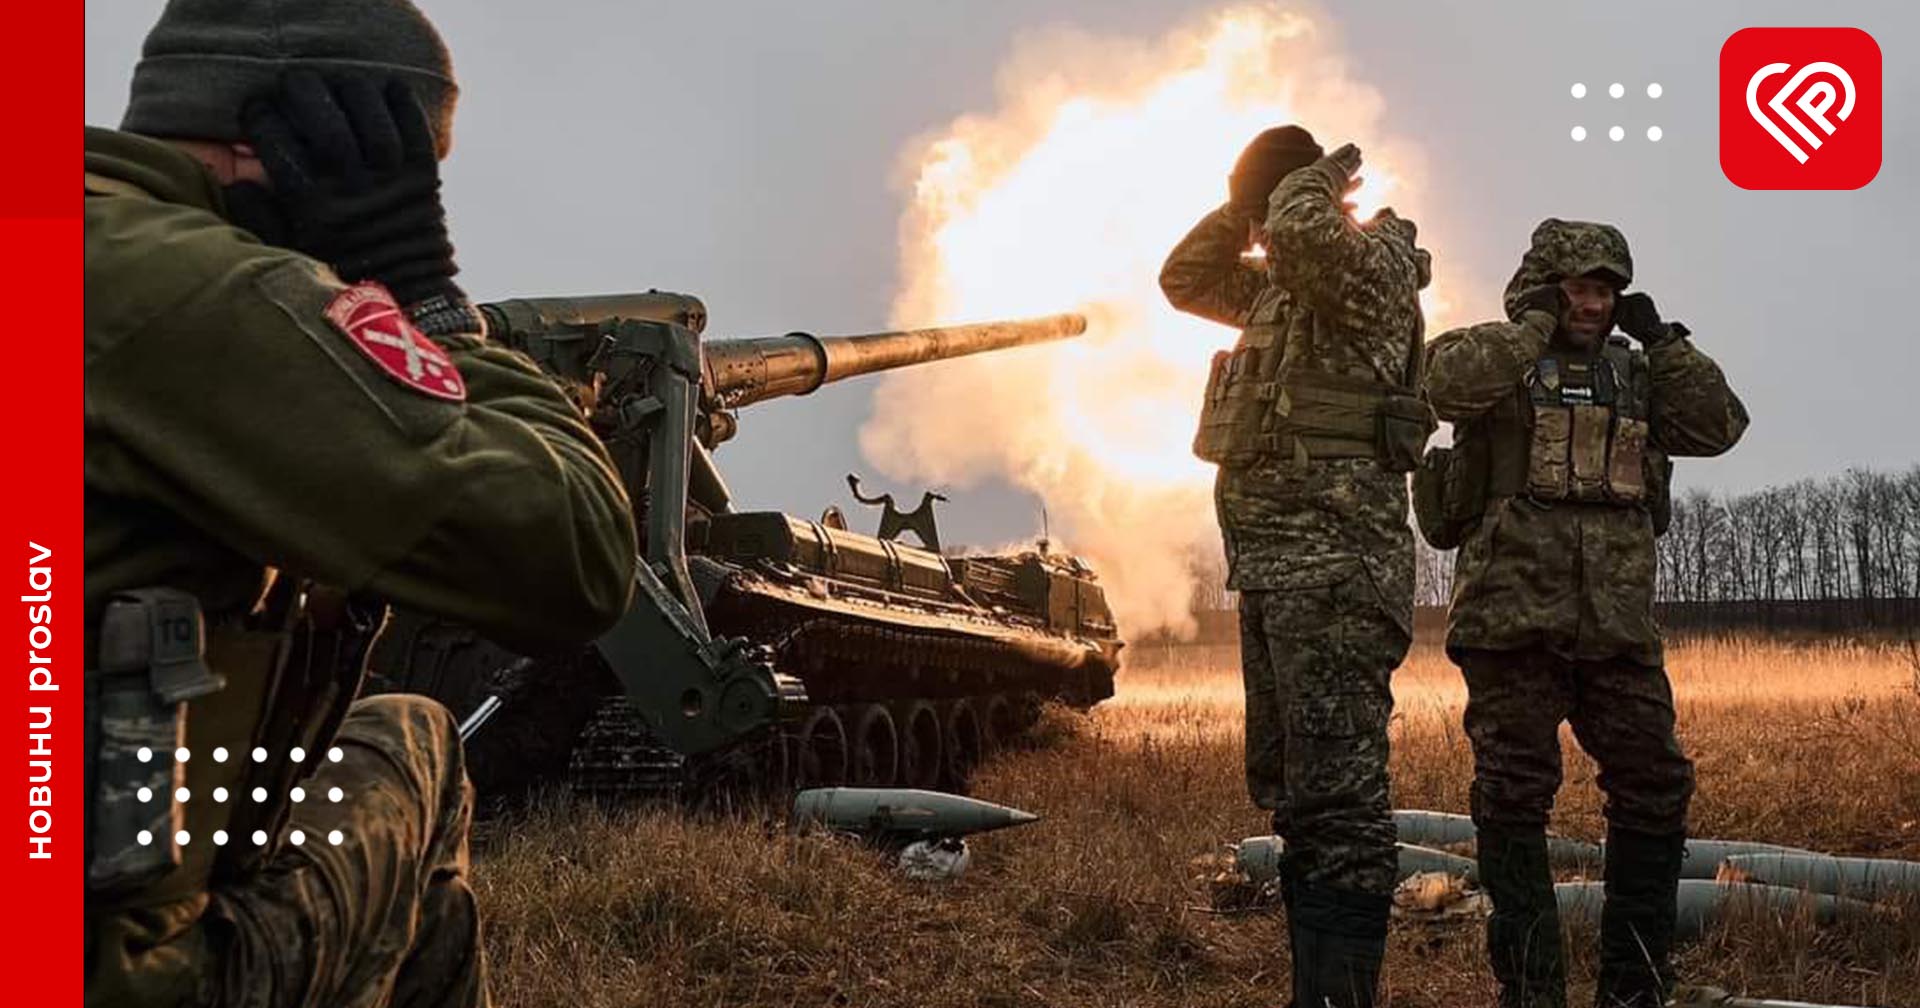 Основні зусилля противник зосереджує на спробах повного захоплення Донецької області – оперативна аналітика та втрати ворога станом на ранок 7 січня